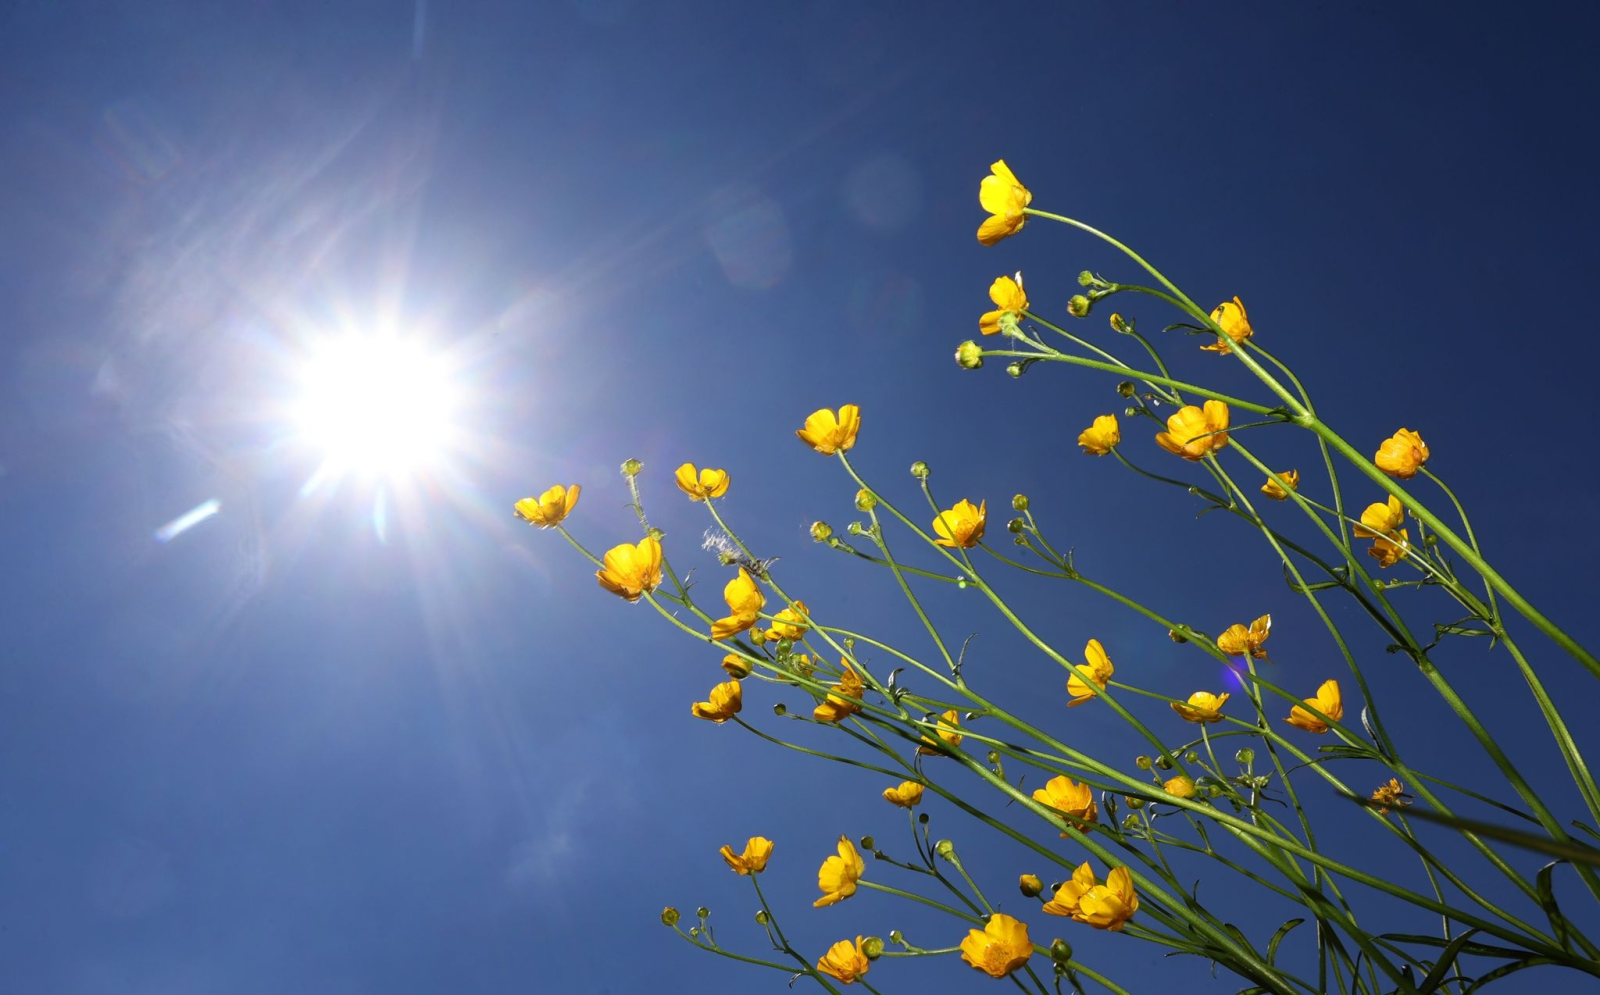 Butterblumen stehen auf einer Blumenwiese im Sonnenschein.